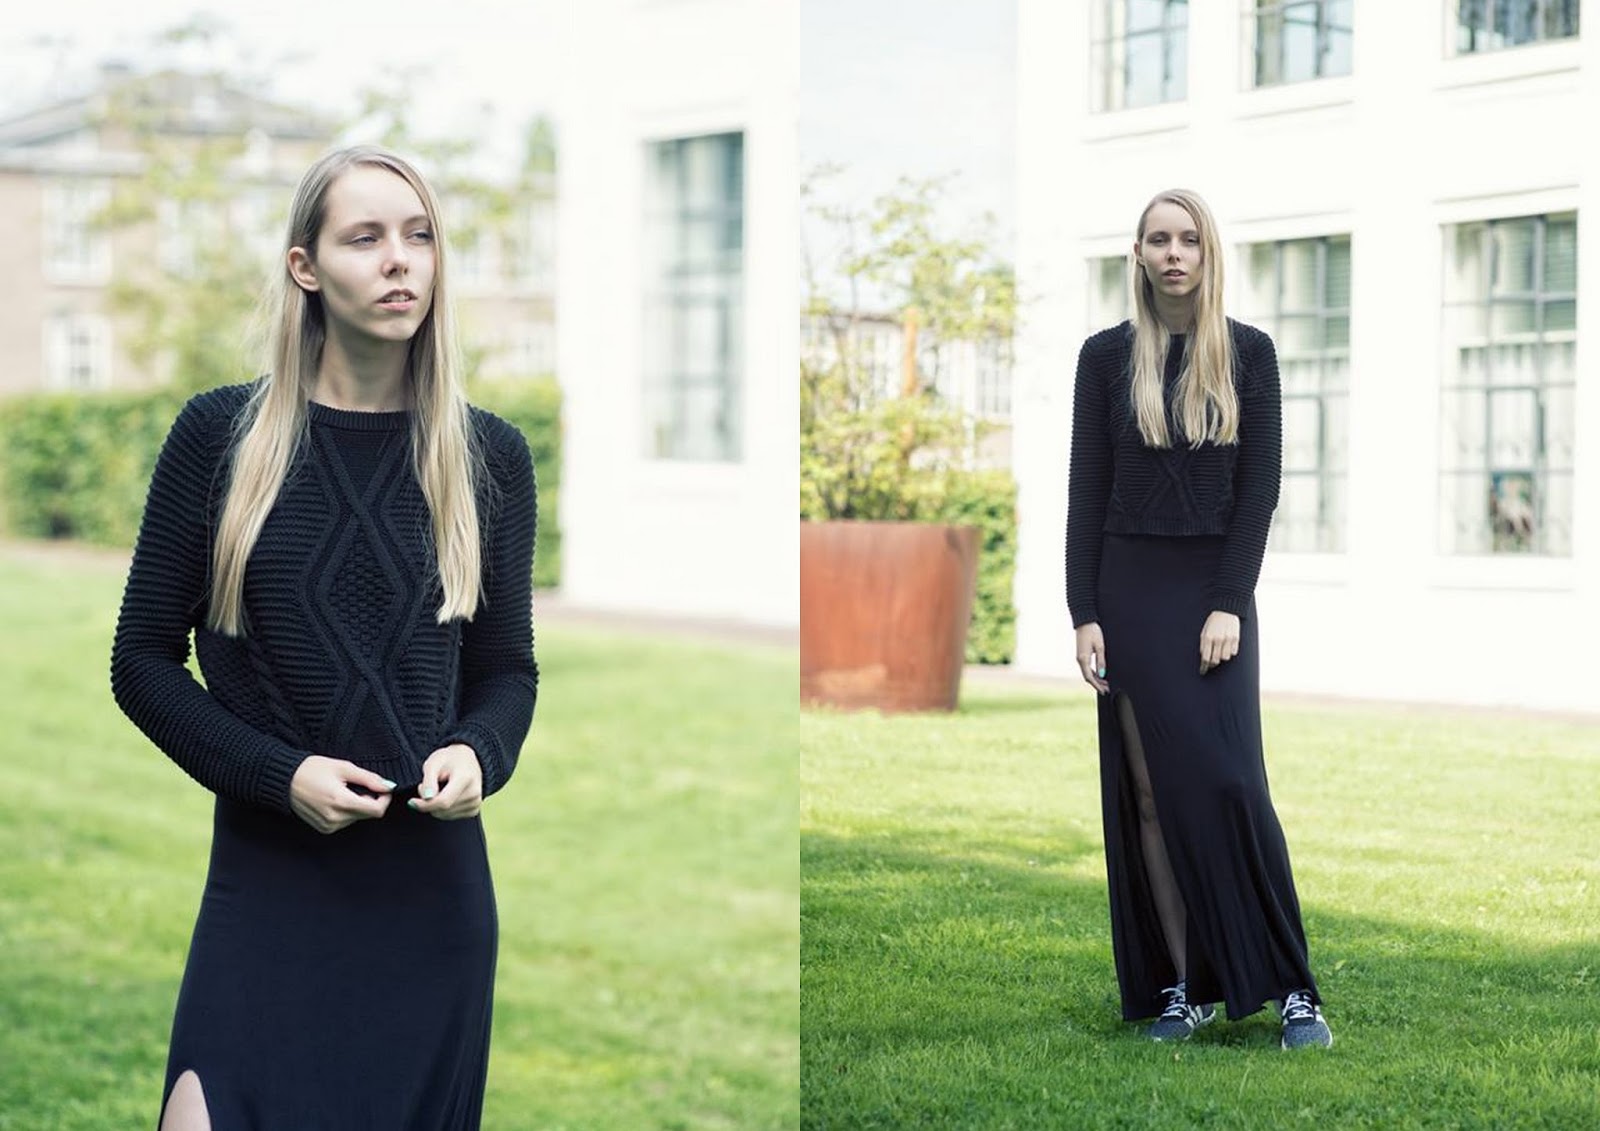 Zwarte lange rok met split gebreide trui H&M sneakers onder rokje zwart outfit inspiratie Adidas neo label sneakers